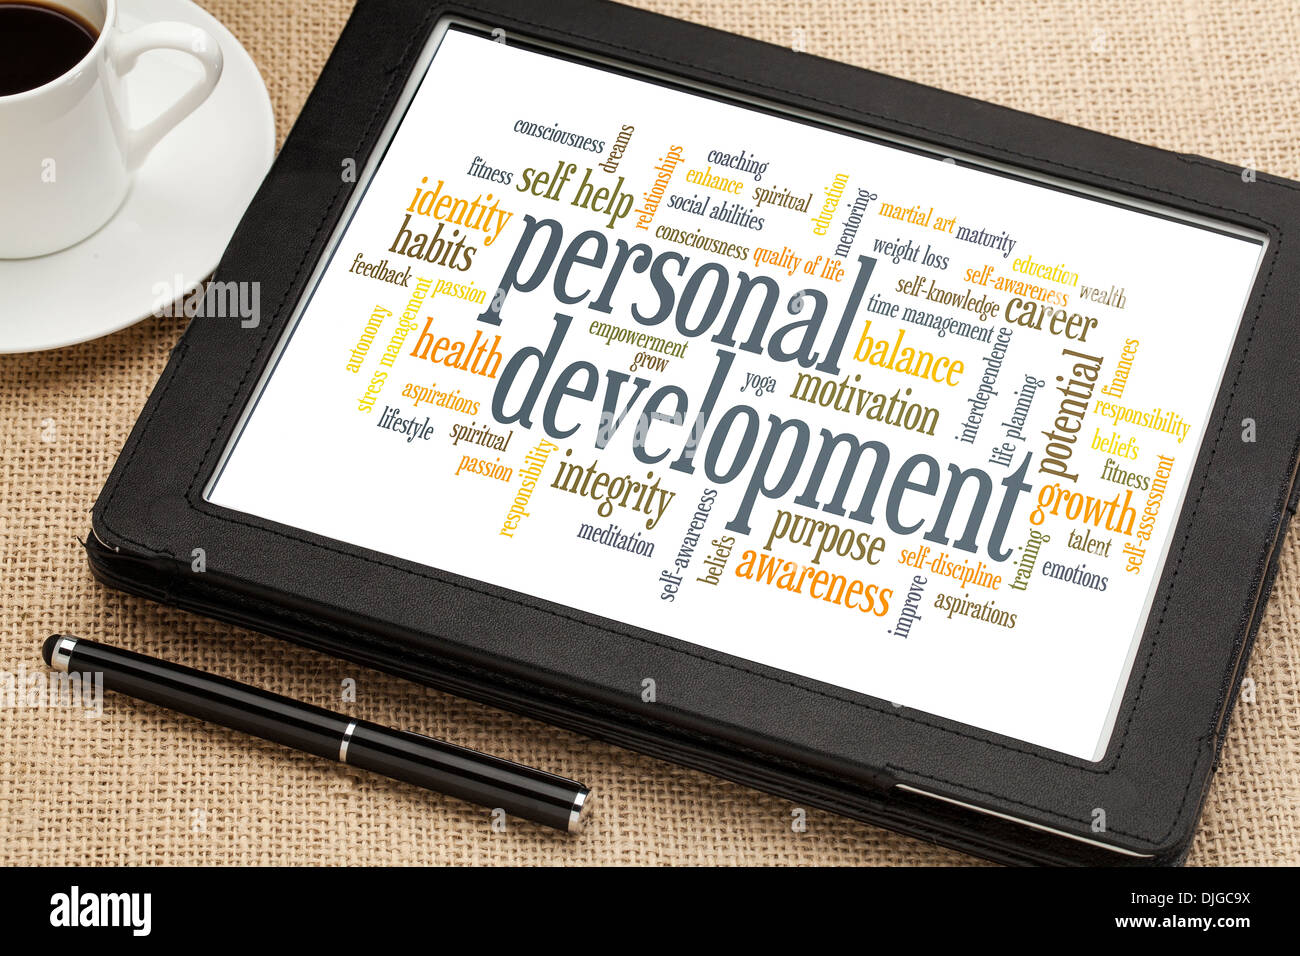 Nube de etiquetas o palabras relacionadas con el desarrollo personal en una tableta digital Foto de stock